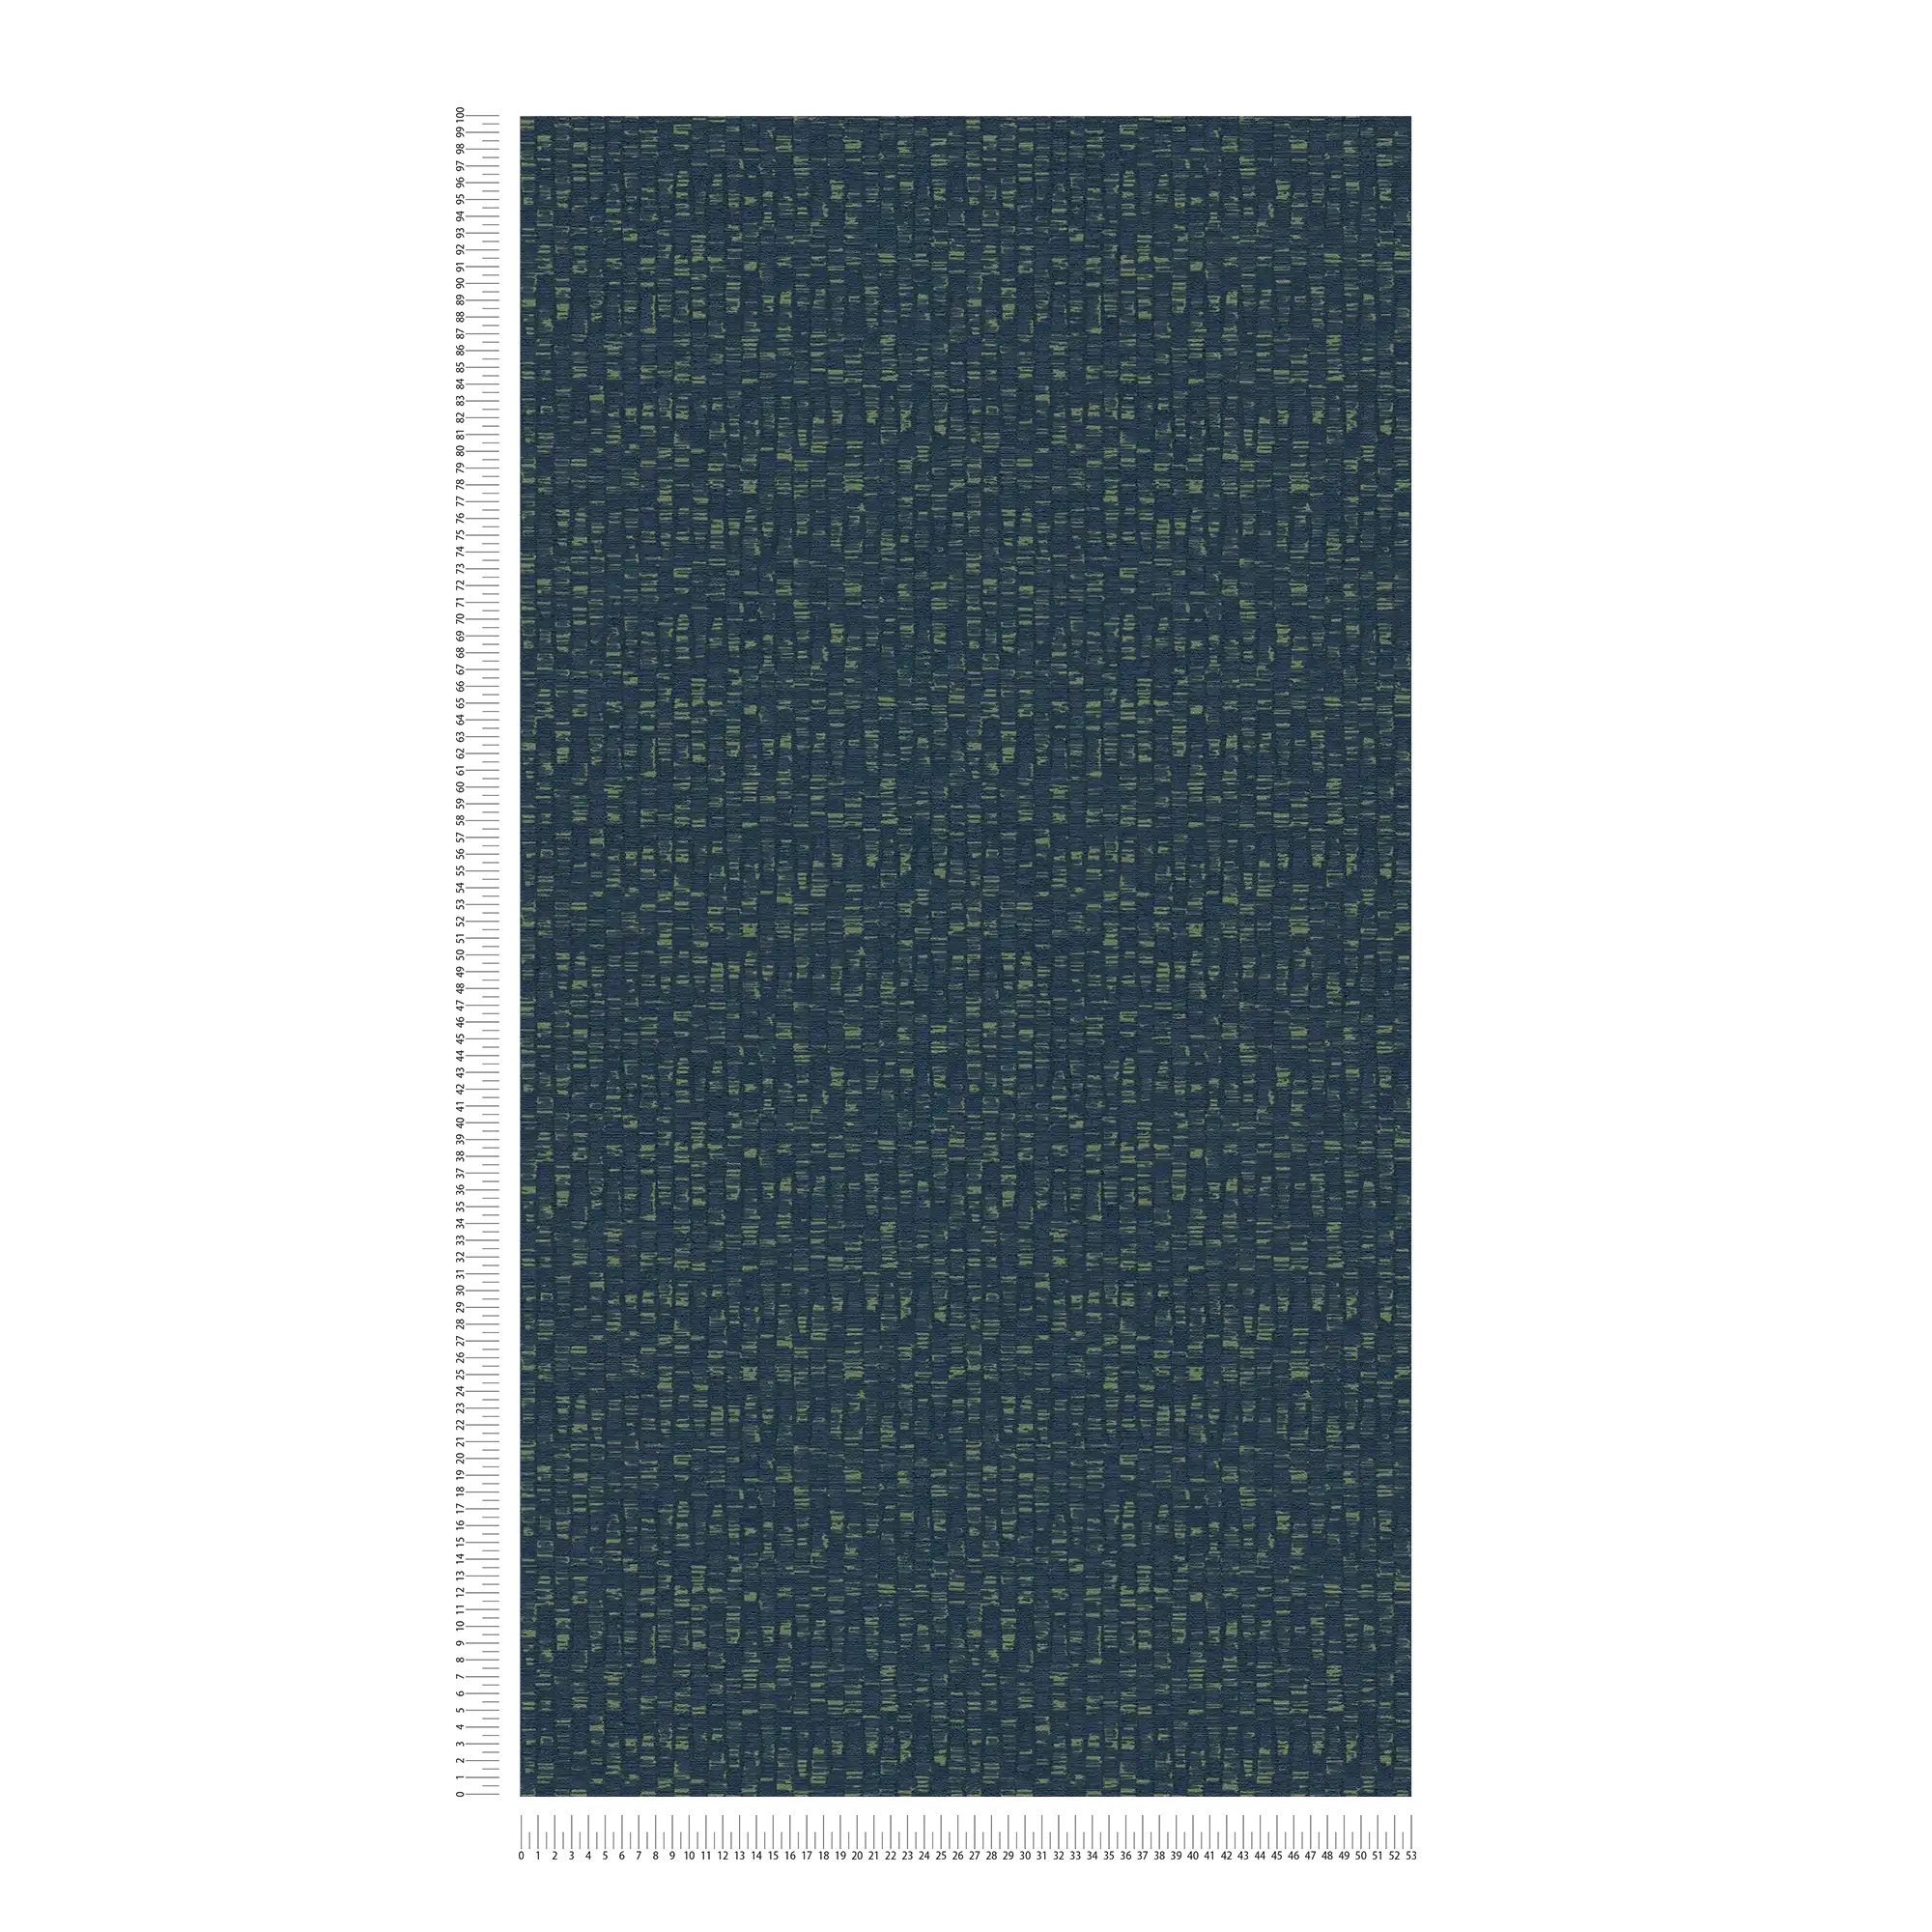             Vliestapete mit dezentem Muster – Blau, Grün
        